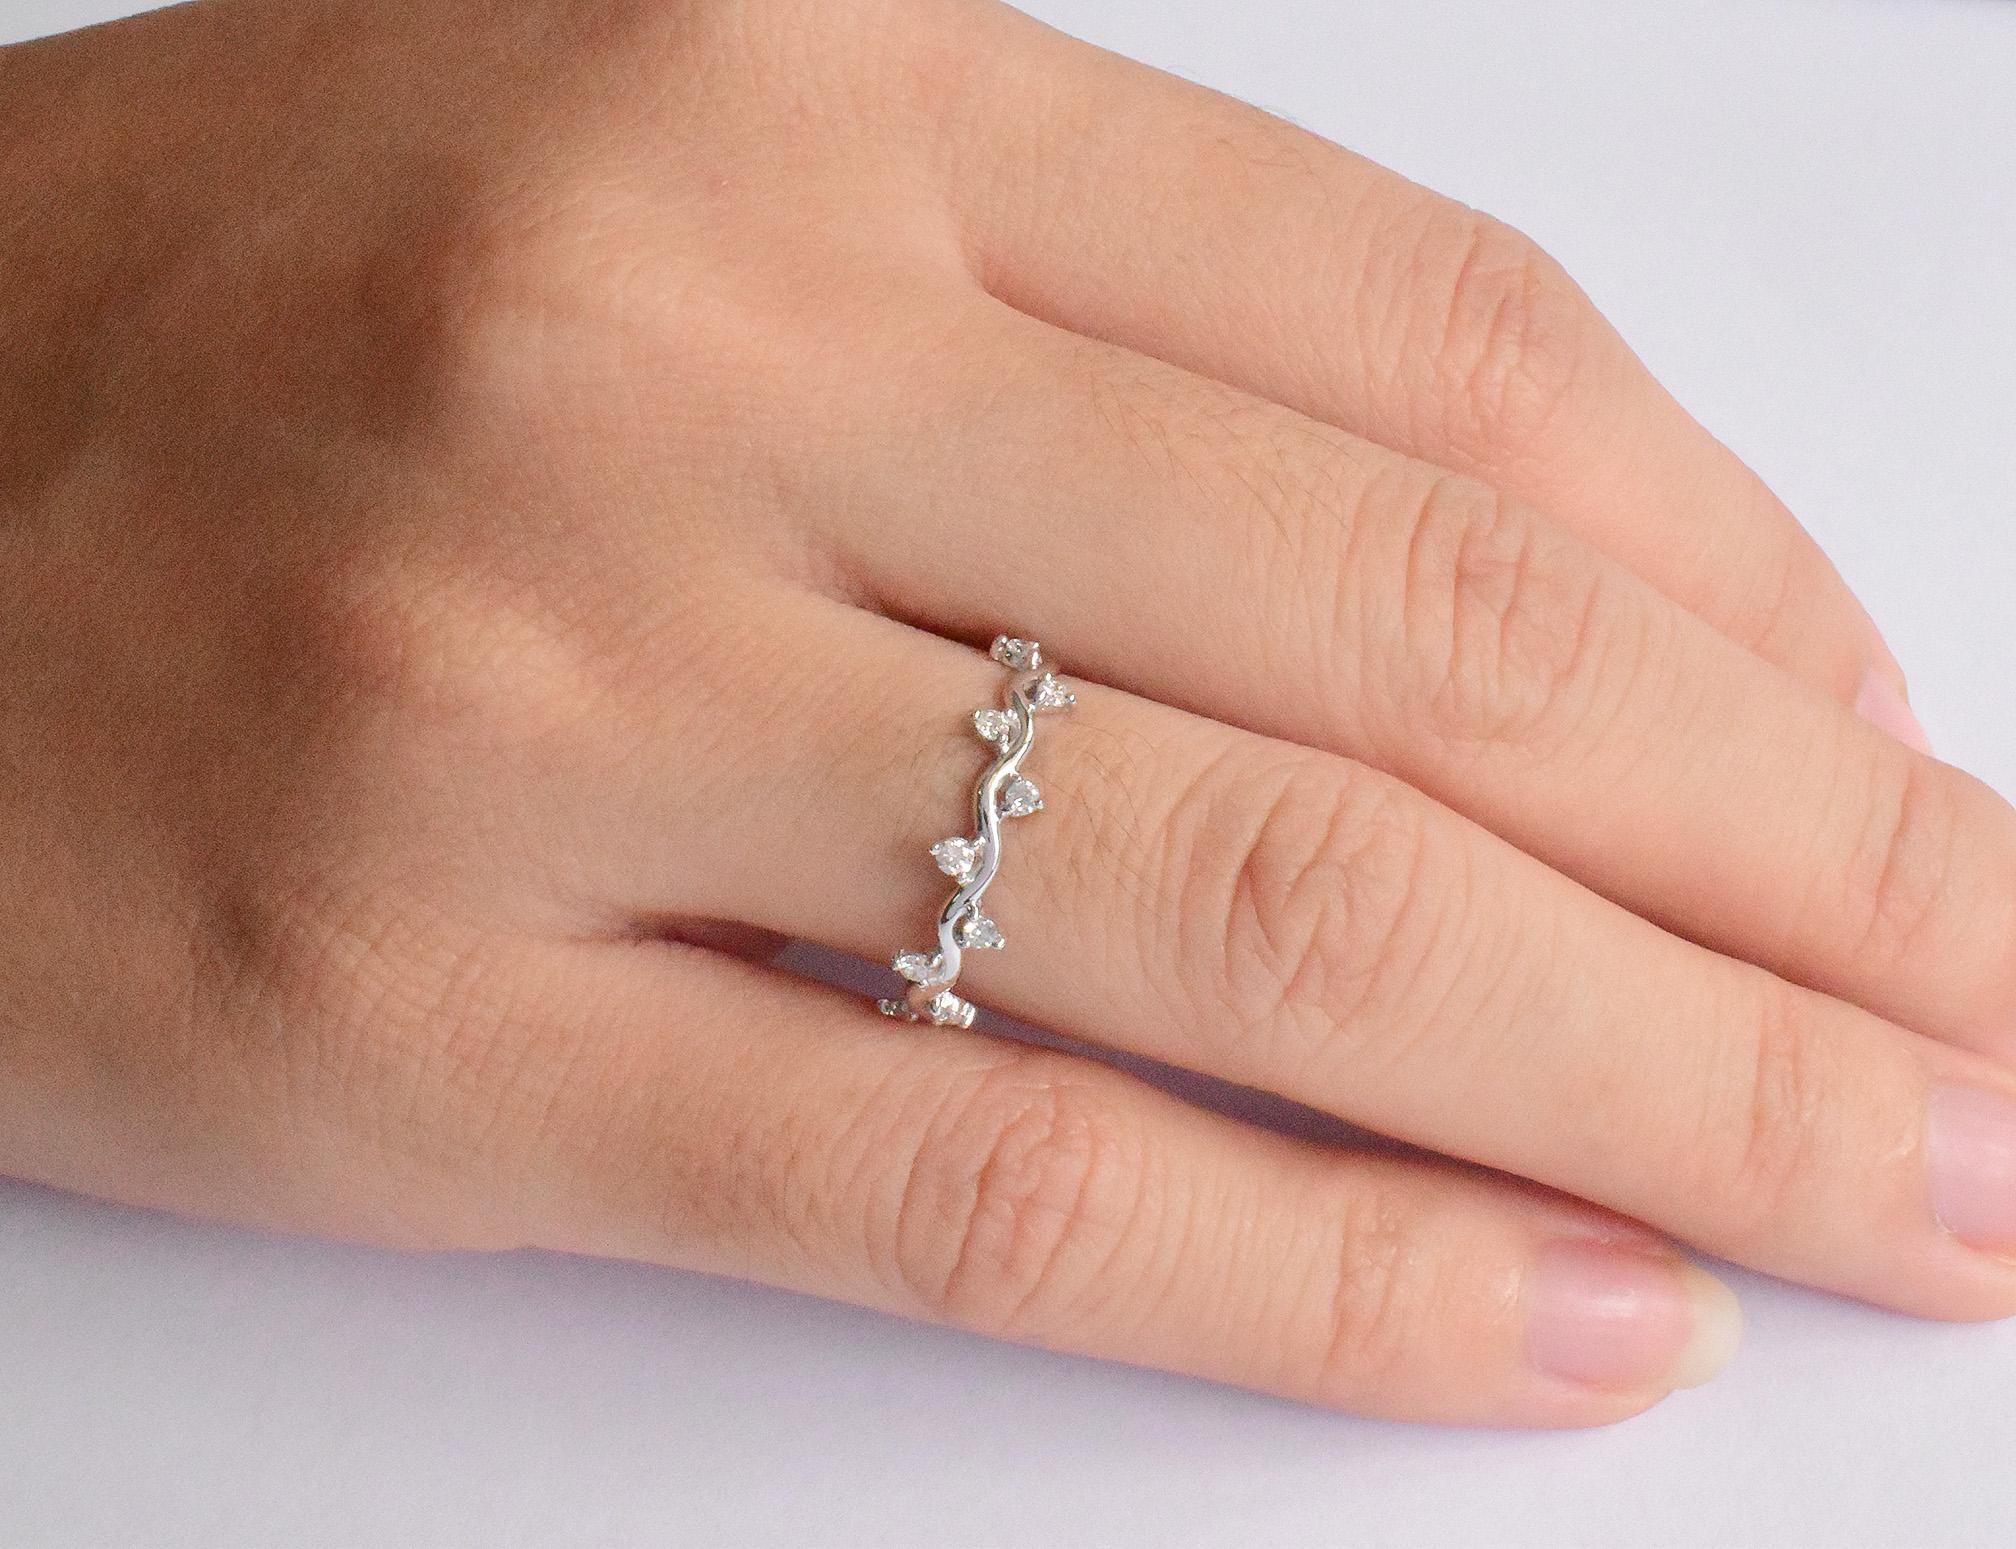 For Sale:  18k Gold Diamond Ring Cluster Diamond Ring Half Eternity Gift Ring 6